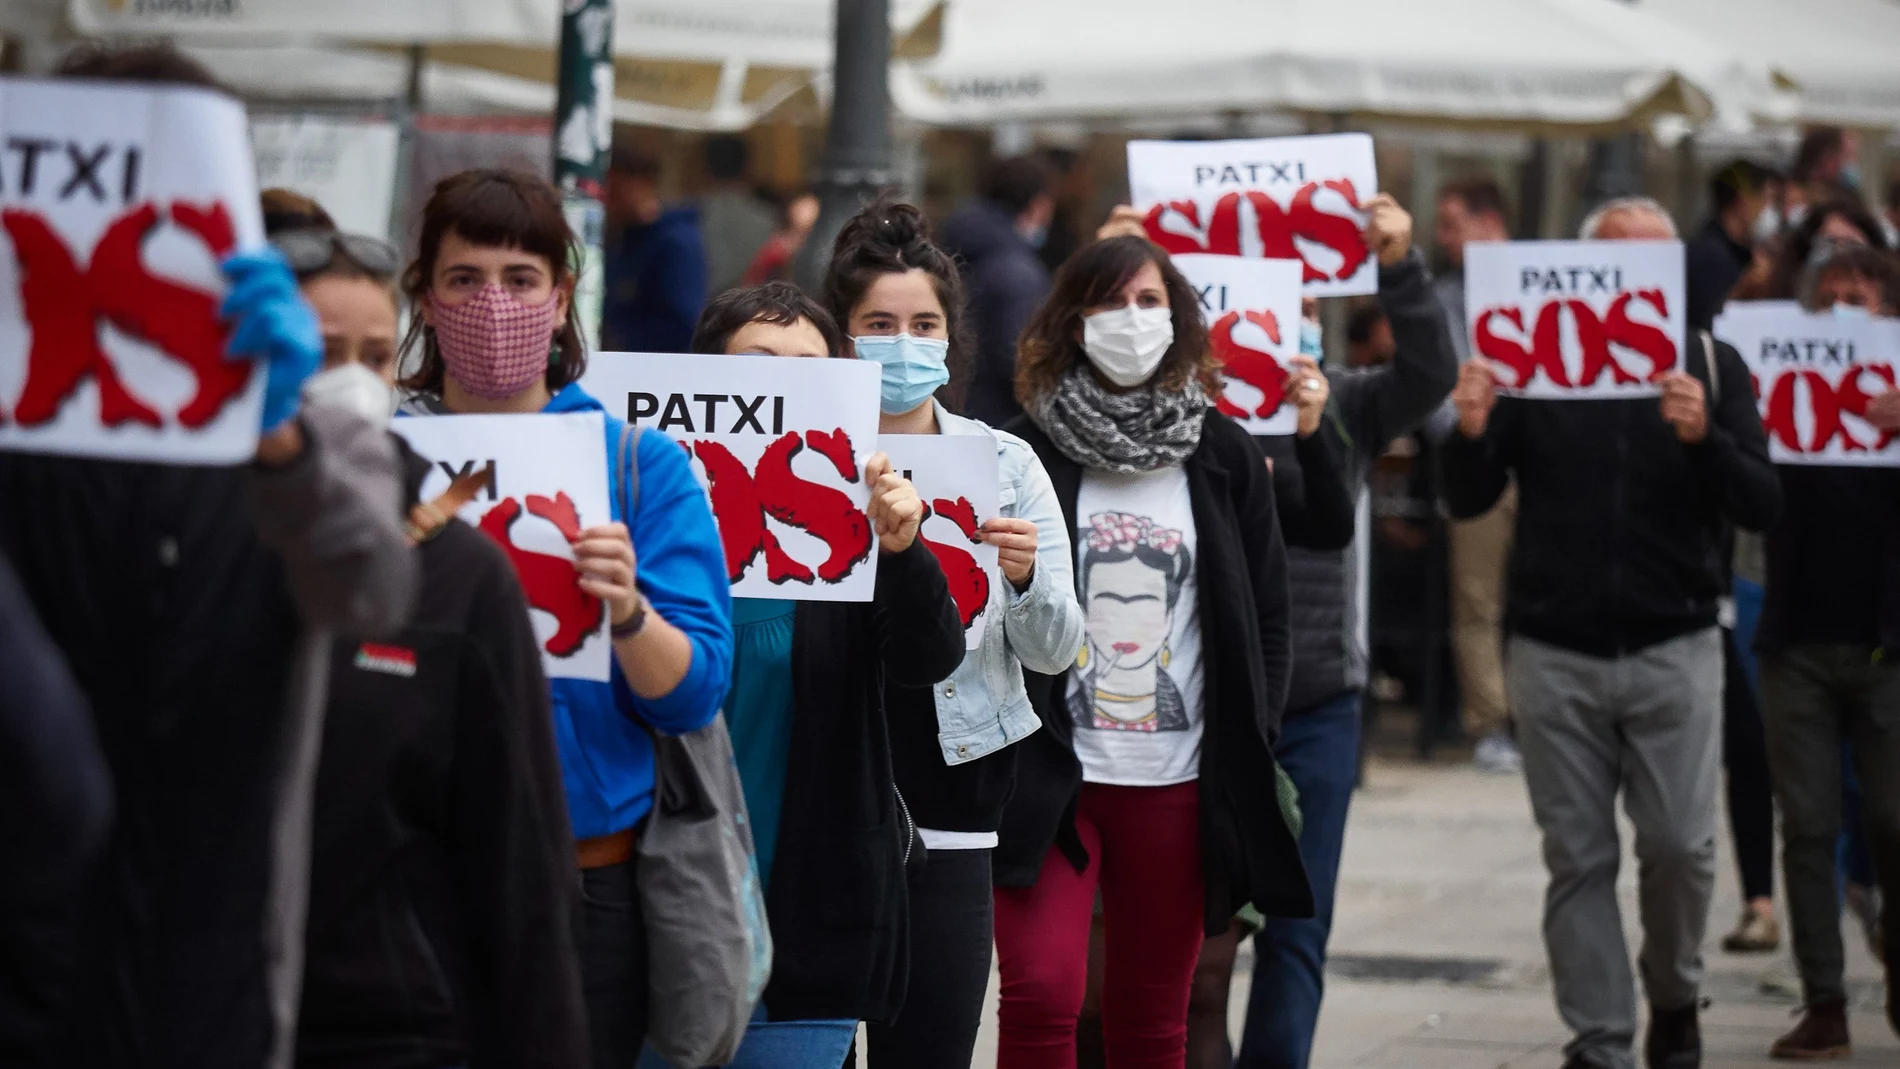 Jóvenes durante una concentración a favor del terrorista Patxi Ruiz que tuvo lugar en Pamplona el pasado 25 de mayoEduardo Sanz / Europa Press23/05/2020